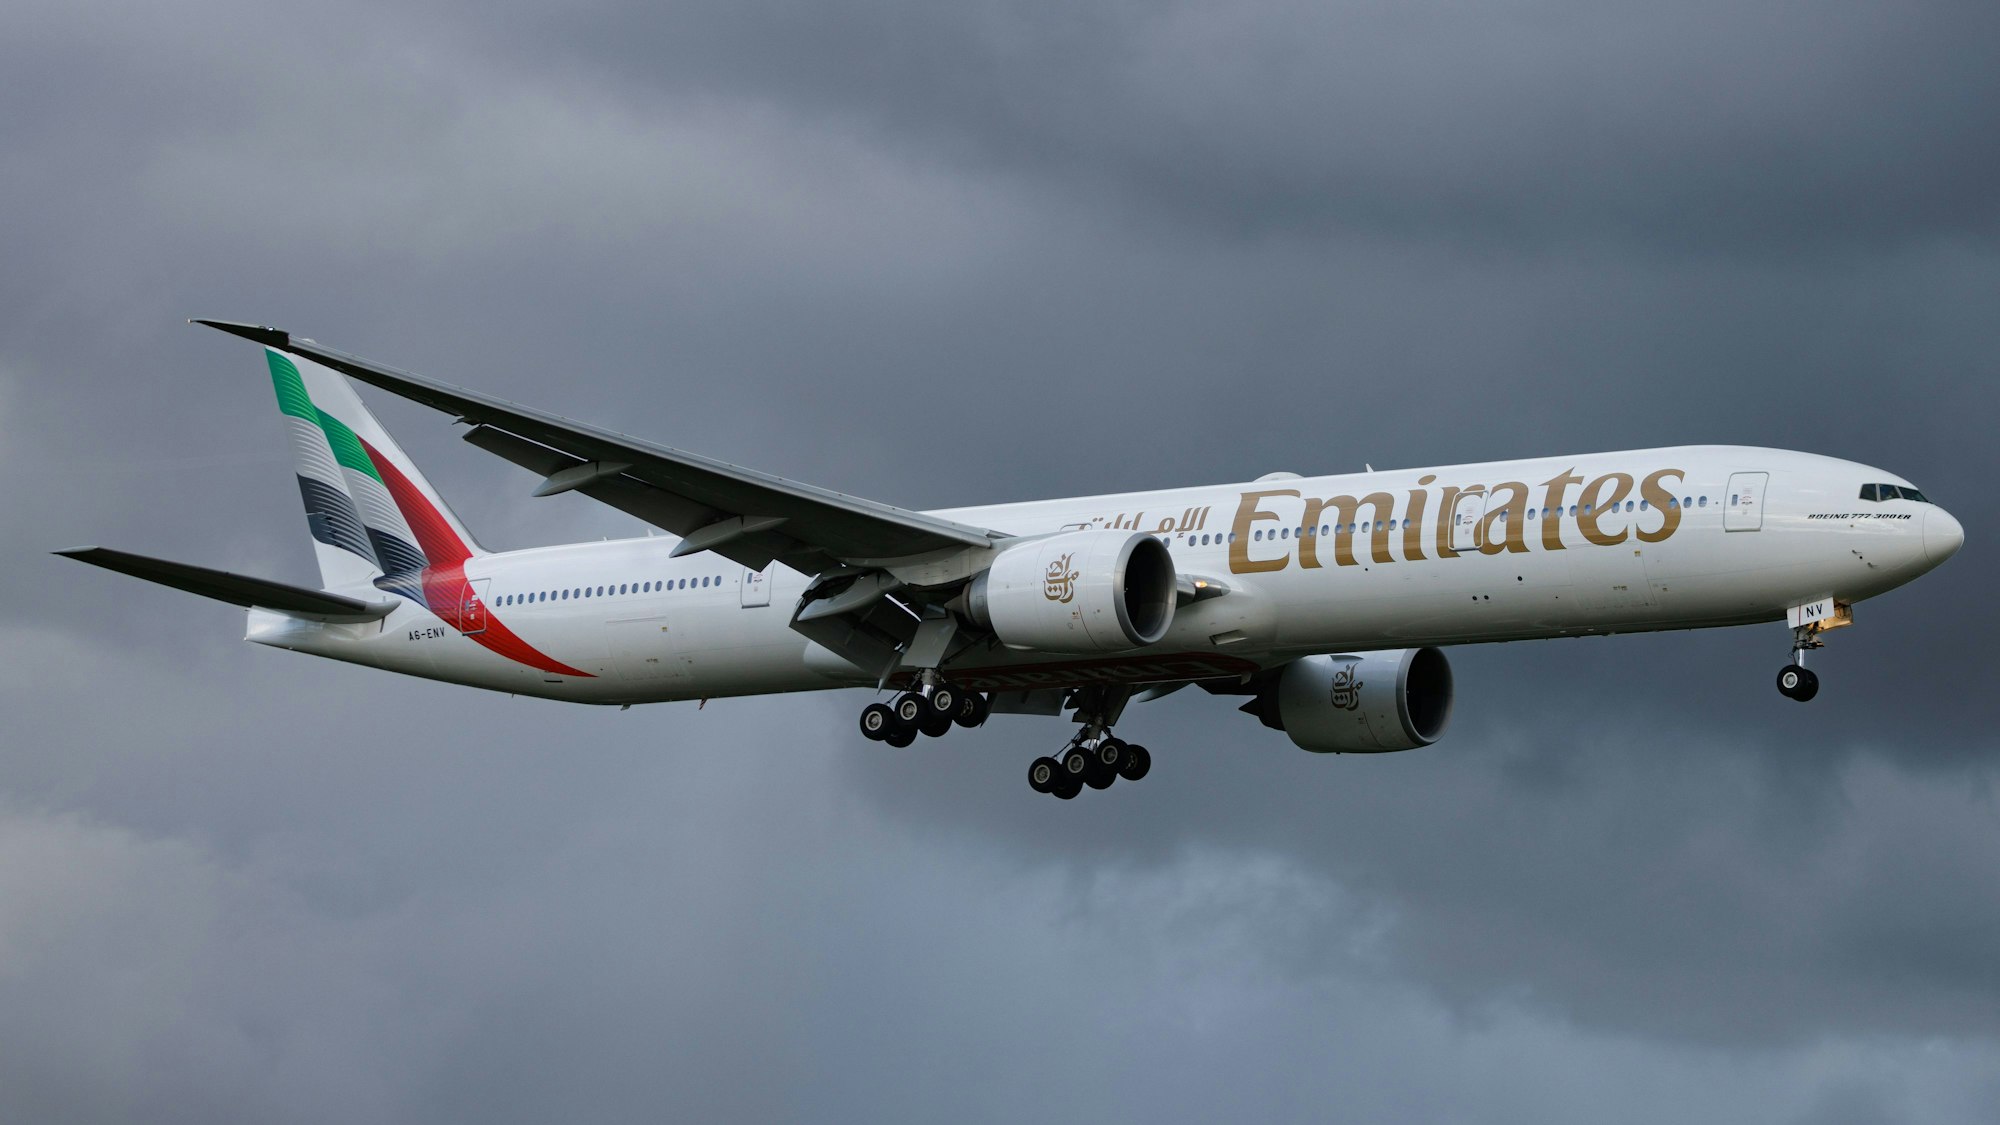 Eine Boeing 777 der arabischen Fluggesellschaft Emirates im Landeanflug auf den Flughafen Hamburg während eines Unwetters. (Symbolbild)